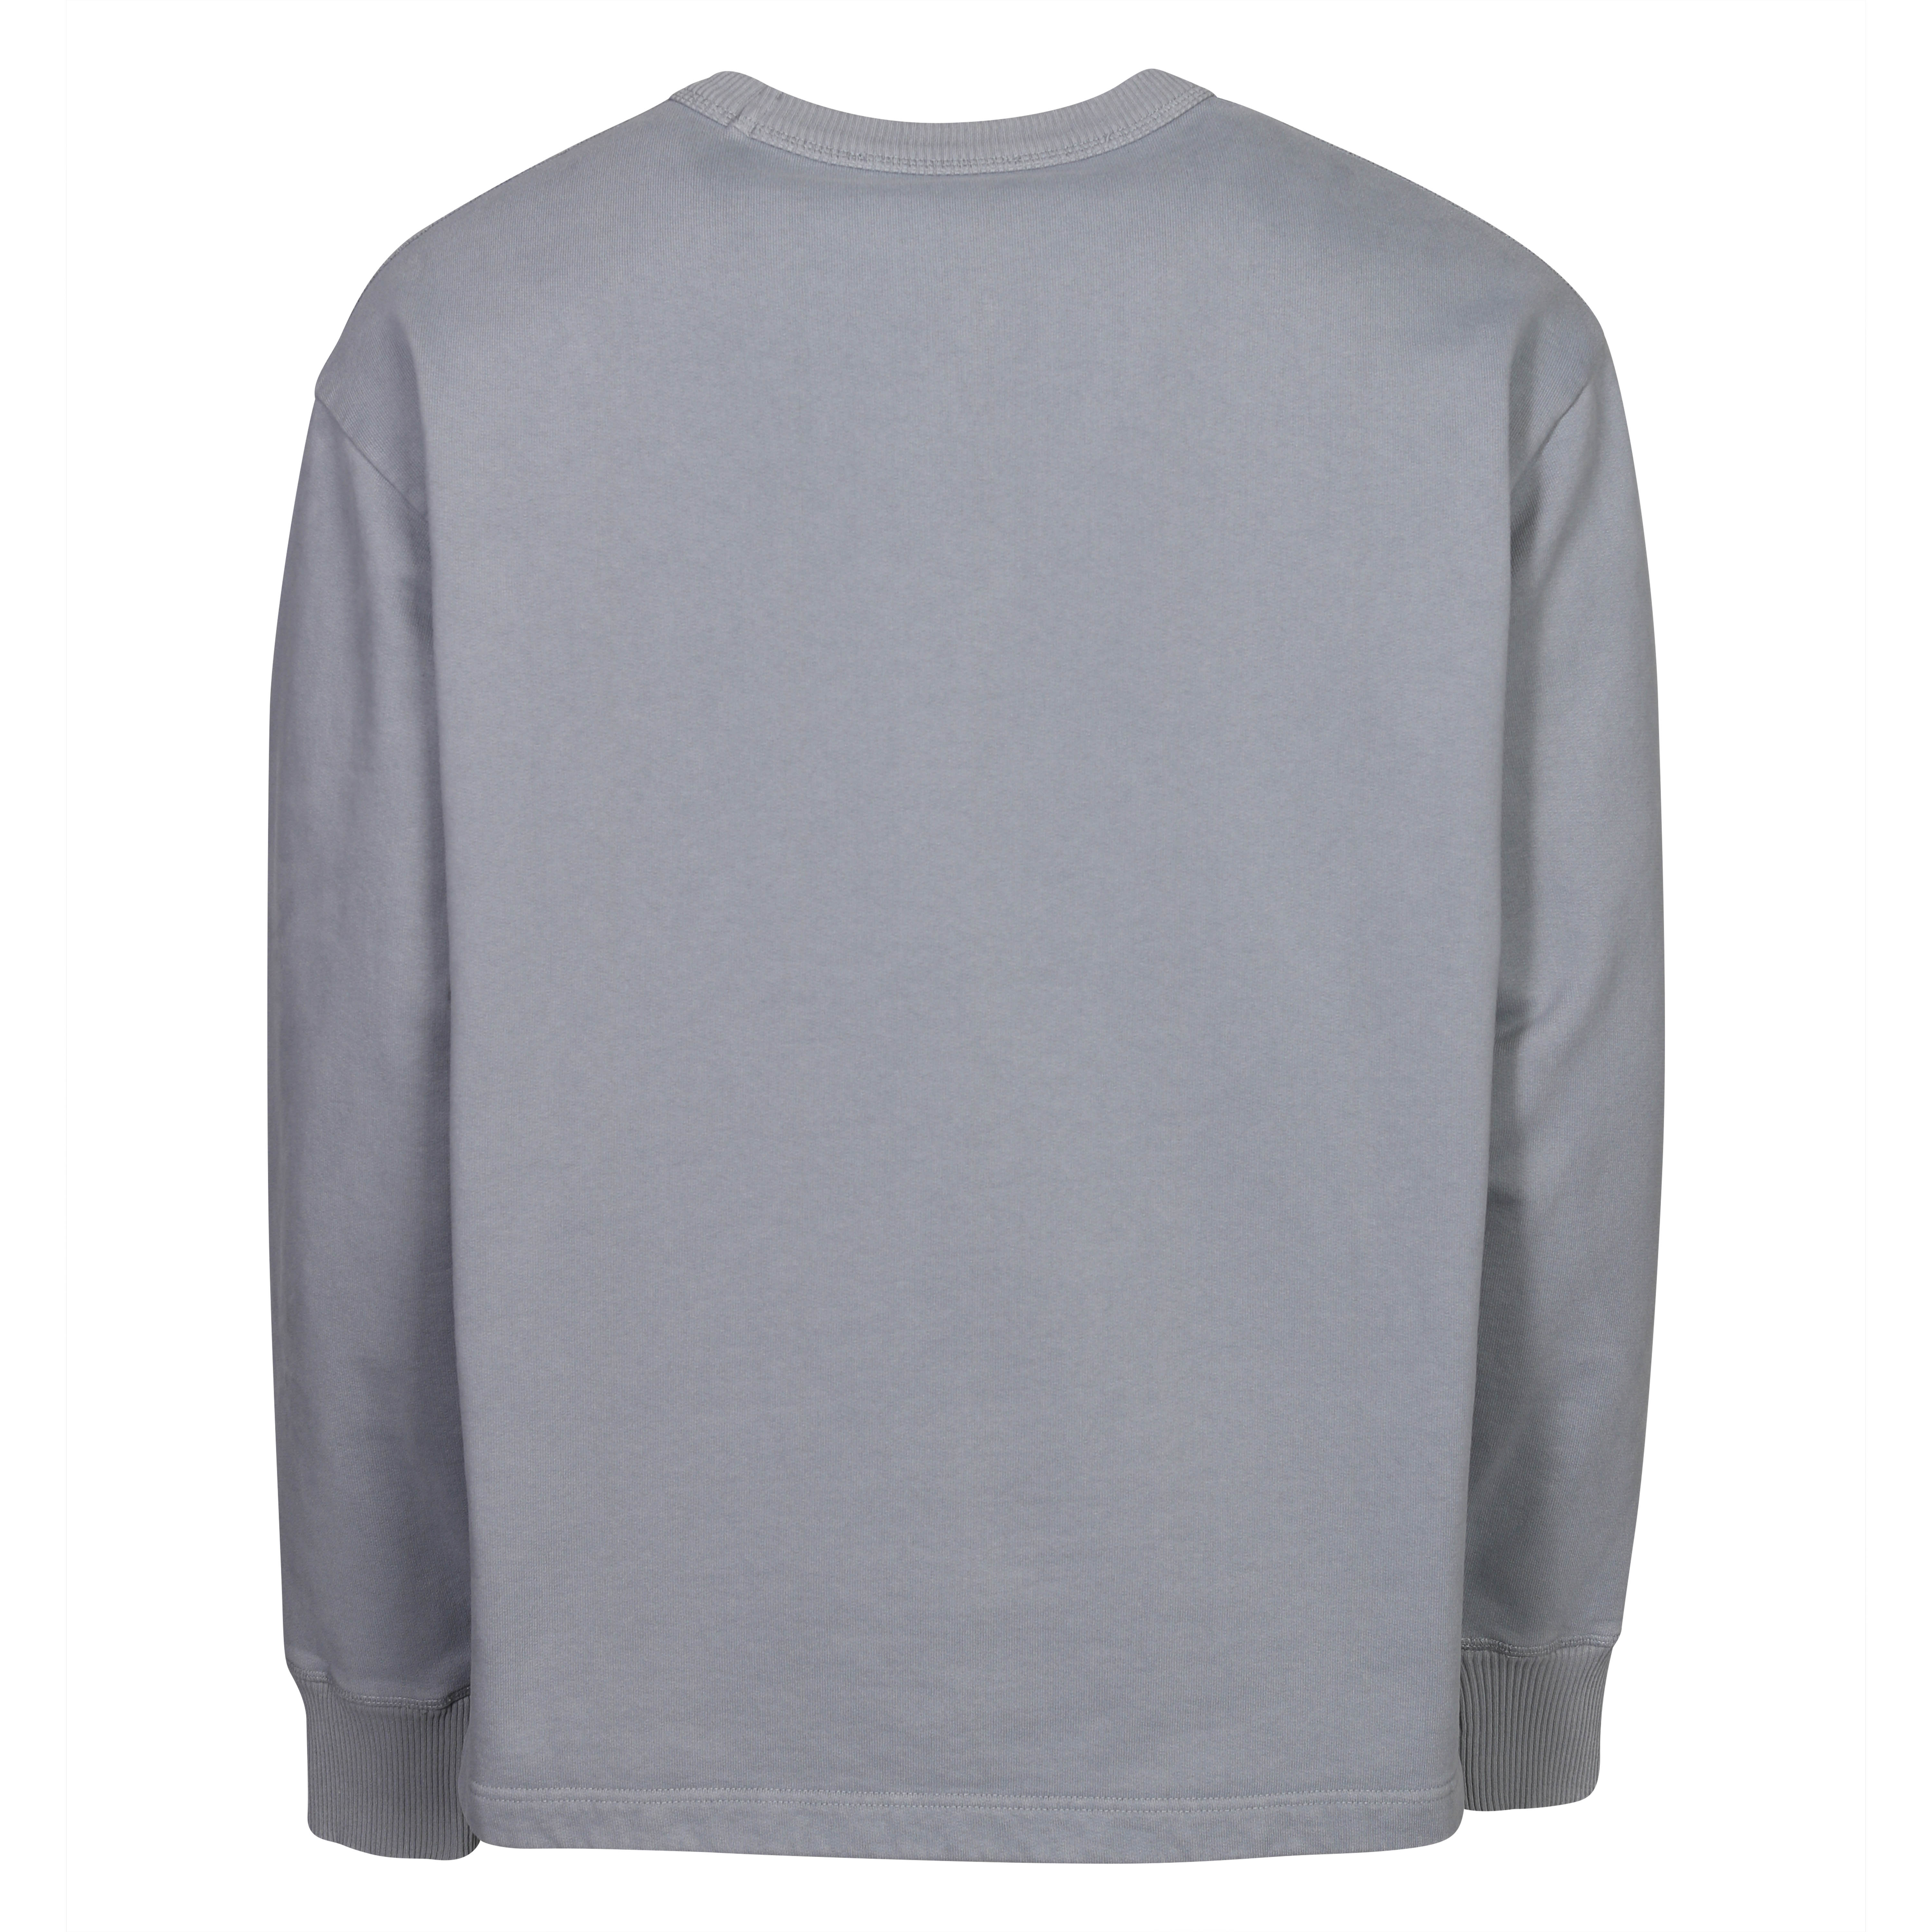 Acne Studios Stamp Sweatshirt in Steel Grey S